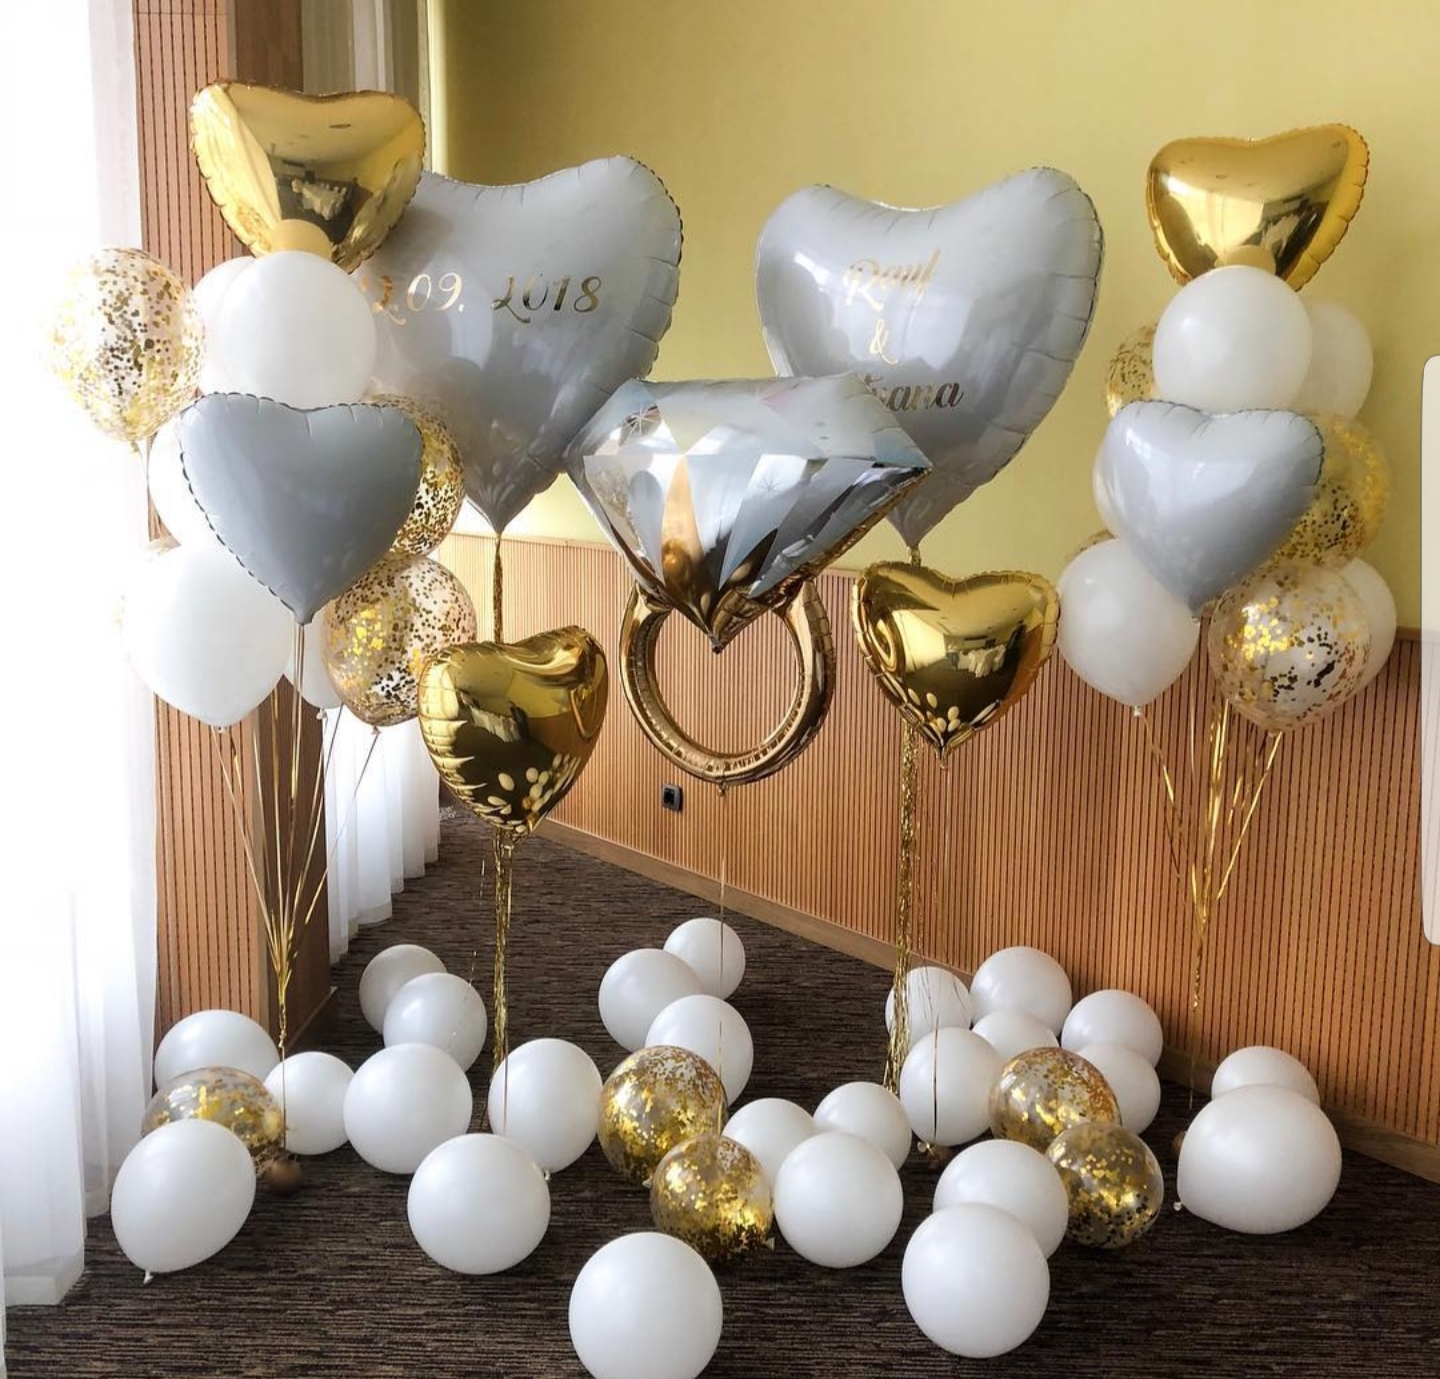 Купить переплетённые сердца из воздушных шаров для оформления свадьбы в Москве, руб.